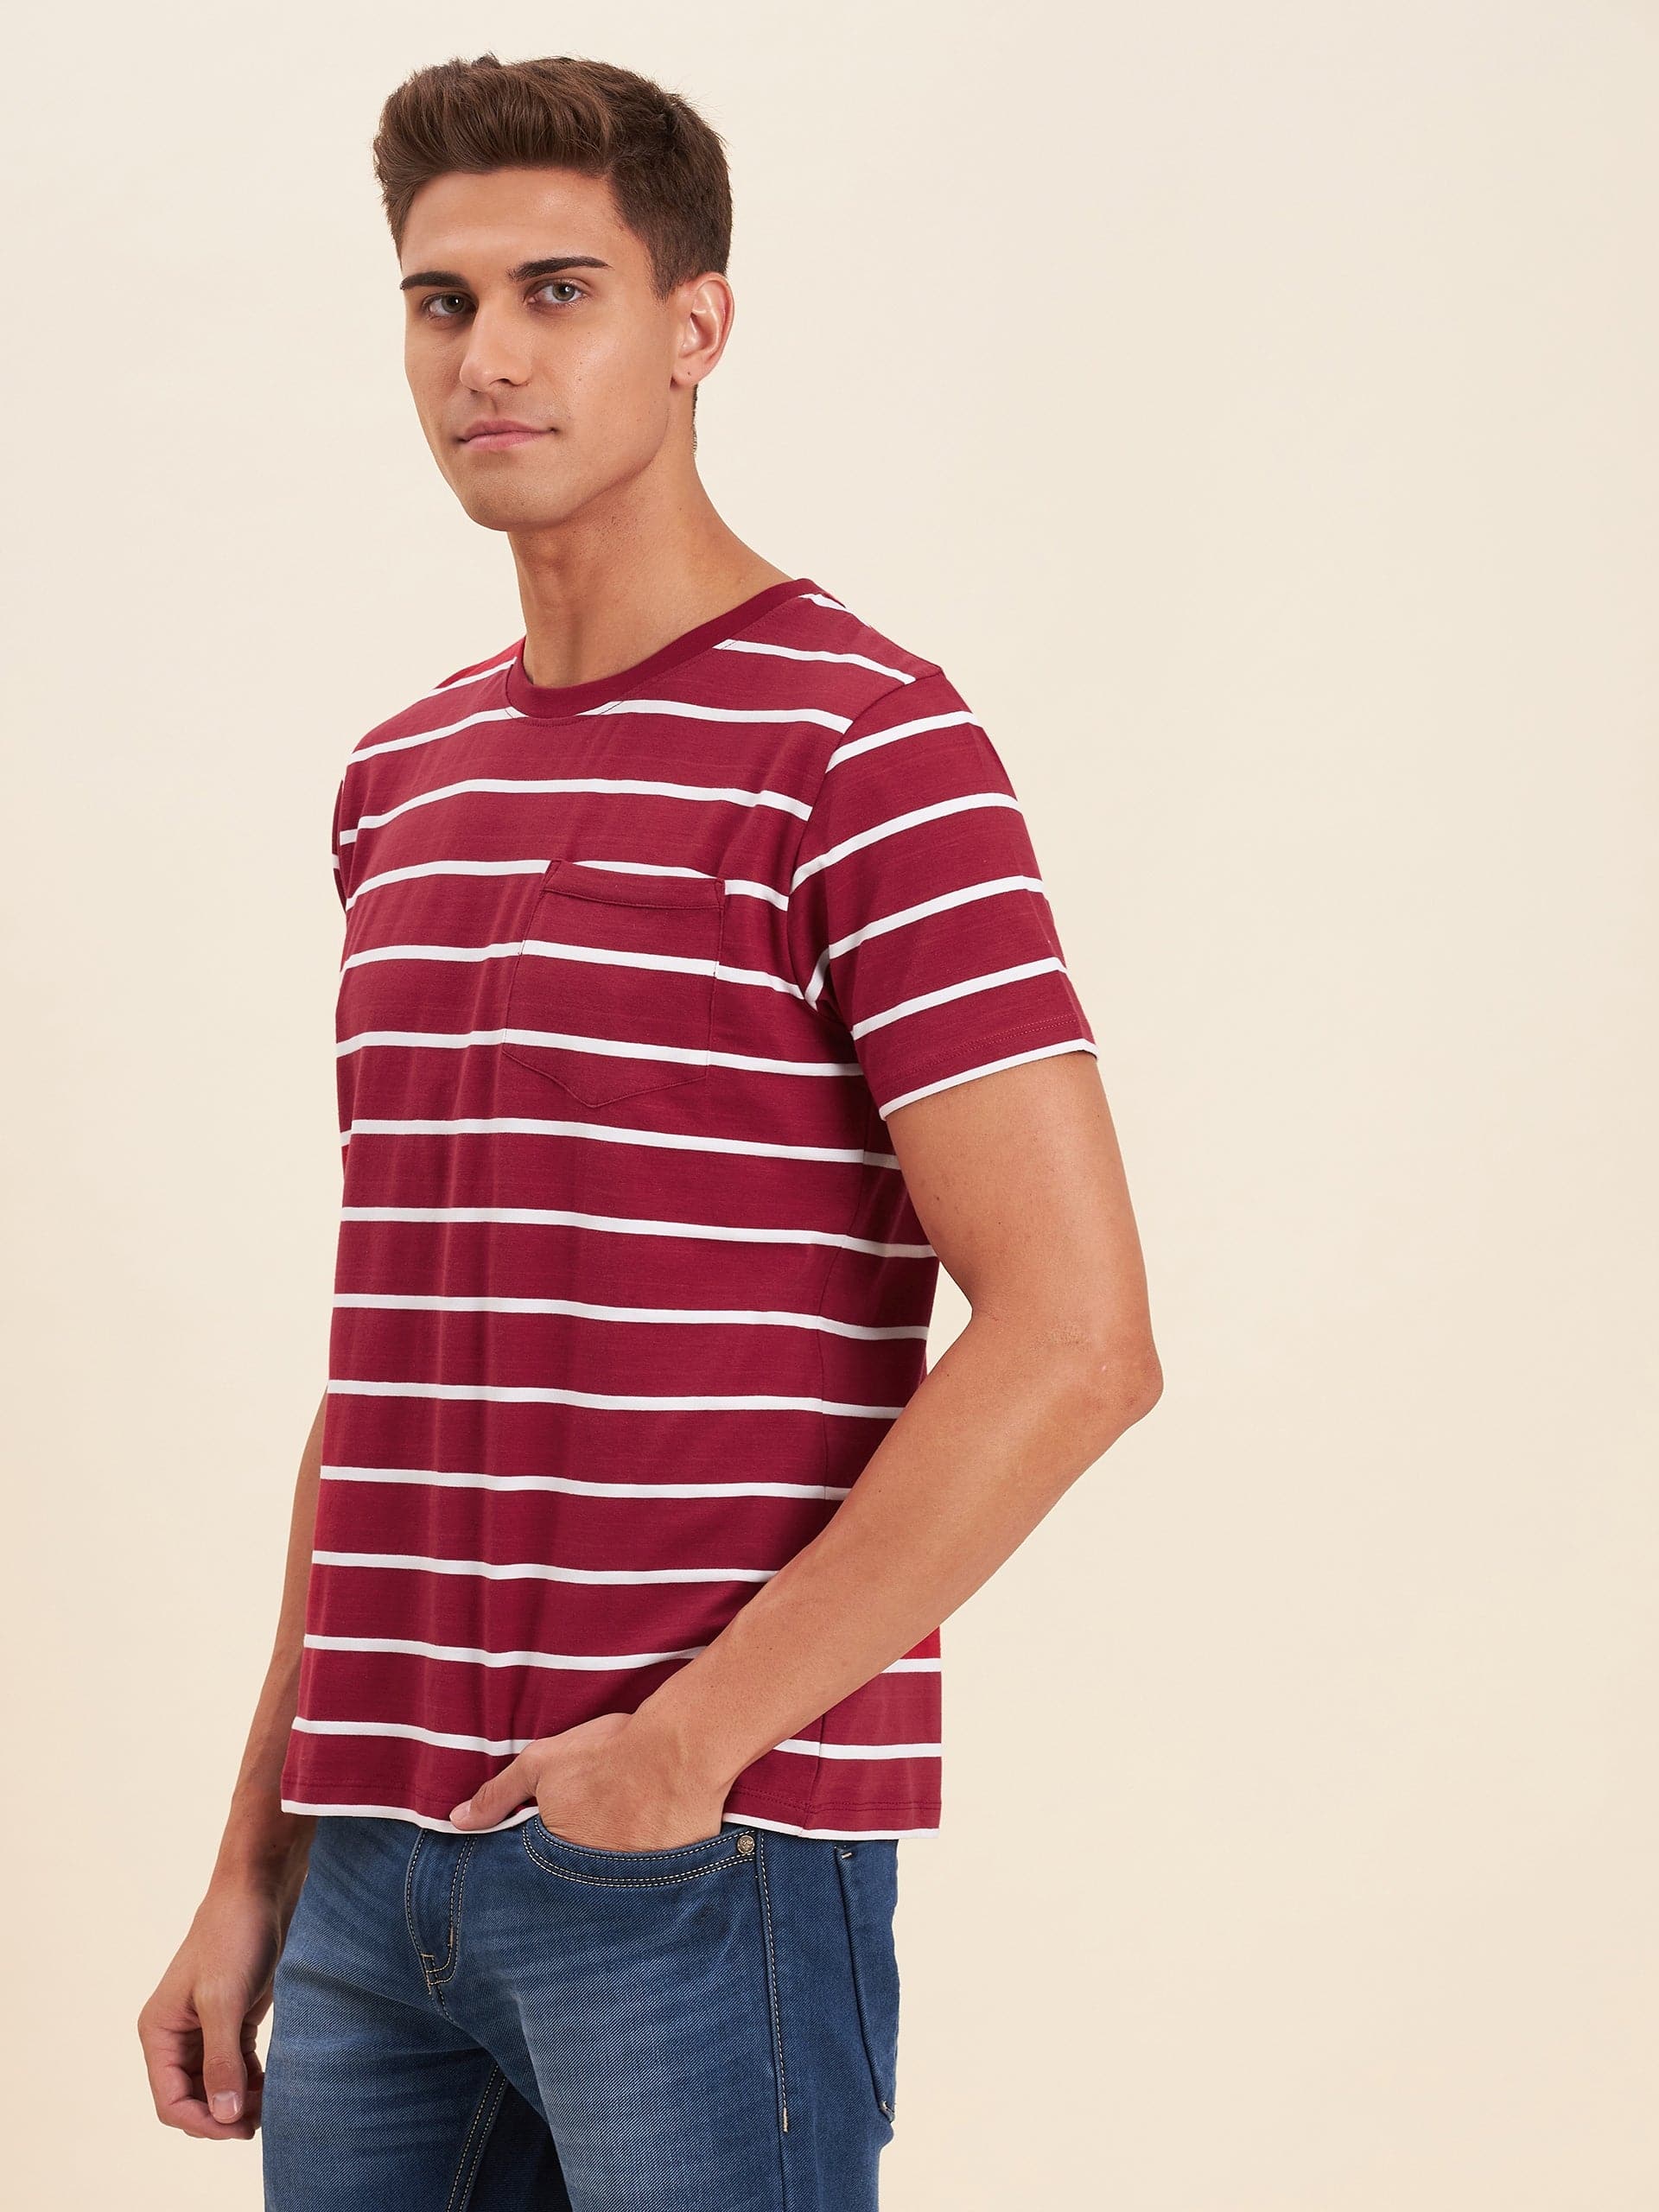 Men's Red & White Stripes Pocket Cotton T-Shirt - LYUSH-MASCLN